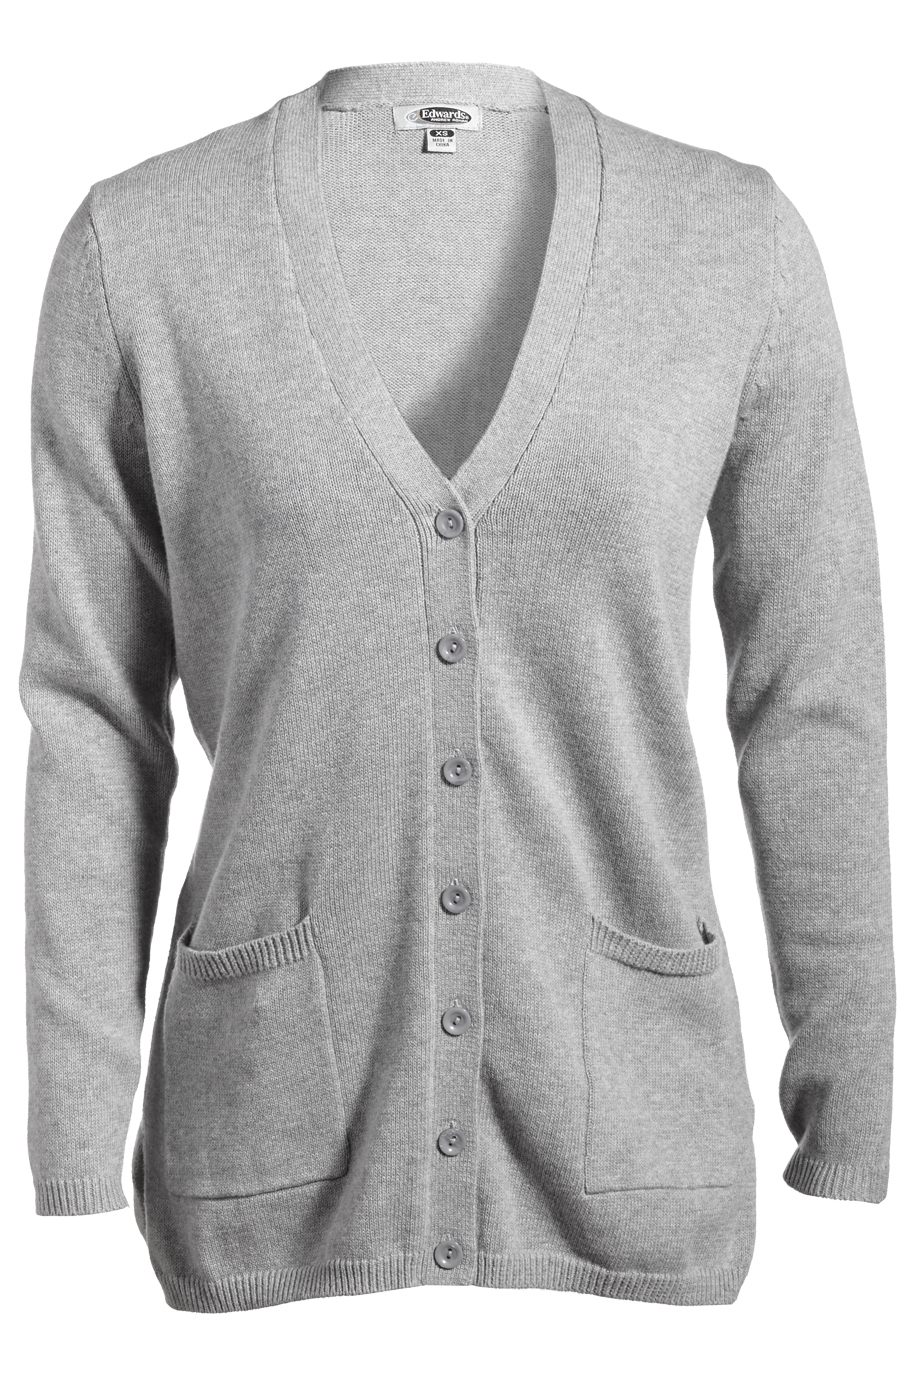 Edwards V-Neck Button Acrylic Cardigan Sweater